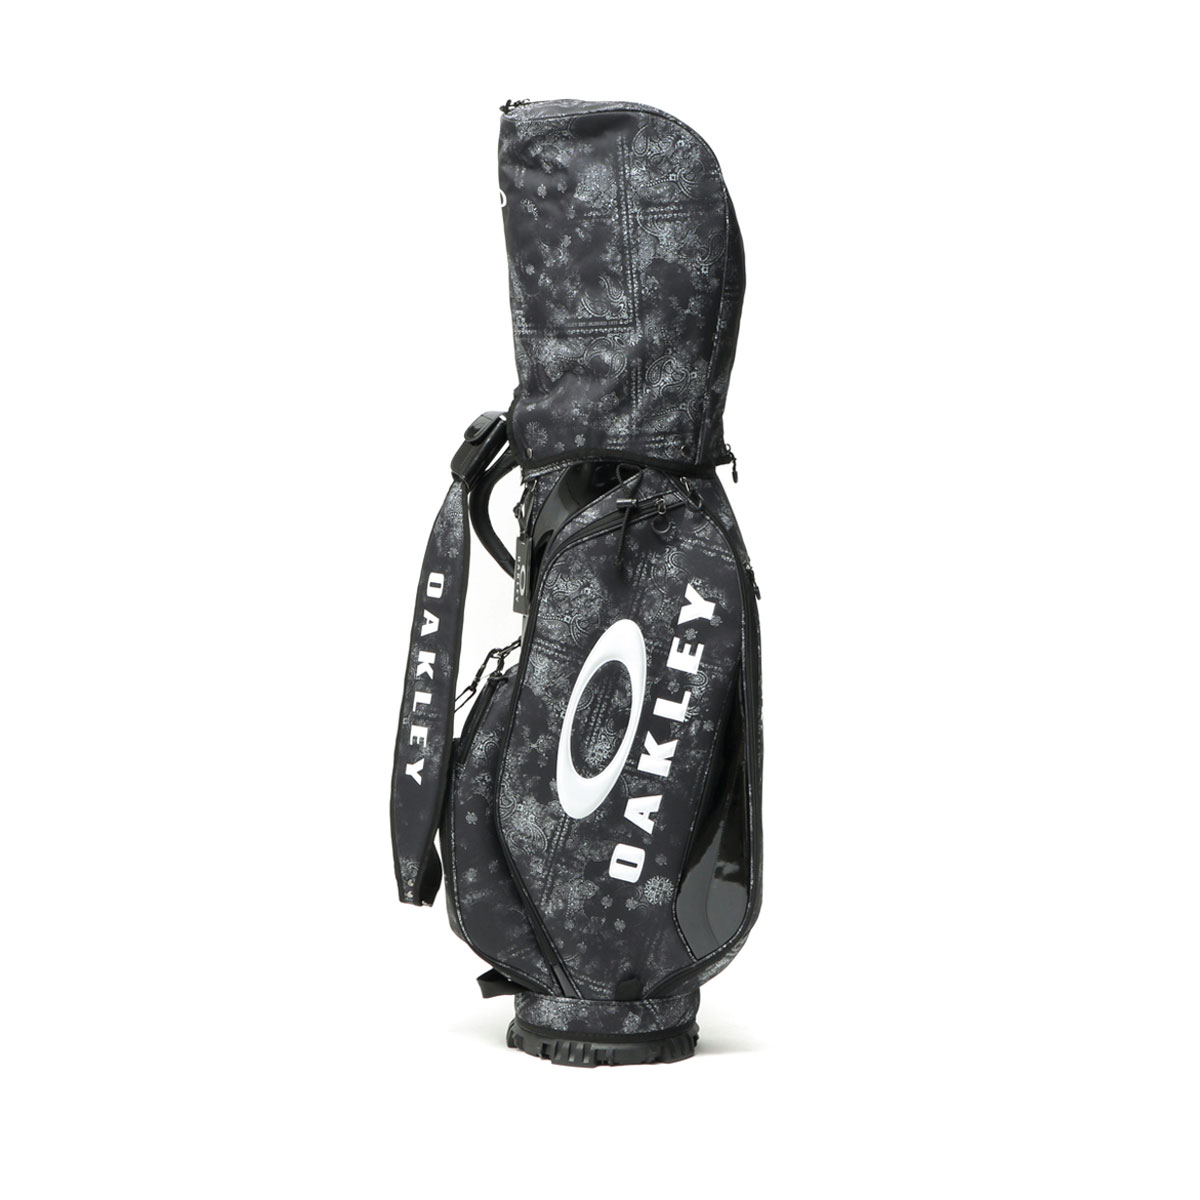 最大40%★5/5限定 日本正規品 オークリー キャディバッグ OAKLEY GOLF BAG 17.0 FW 9.5型 47インチ 5分割 カート式  ゴルフバッグ メンズ レディース FOS901534